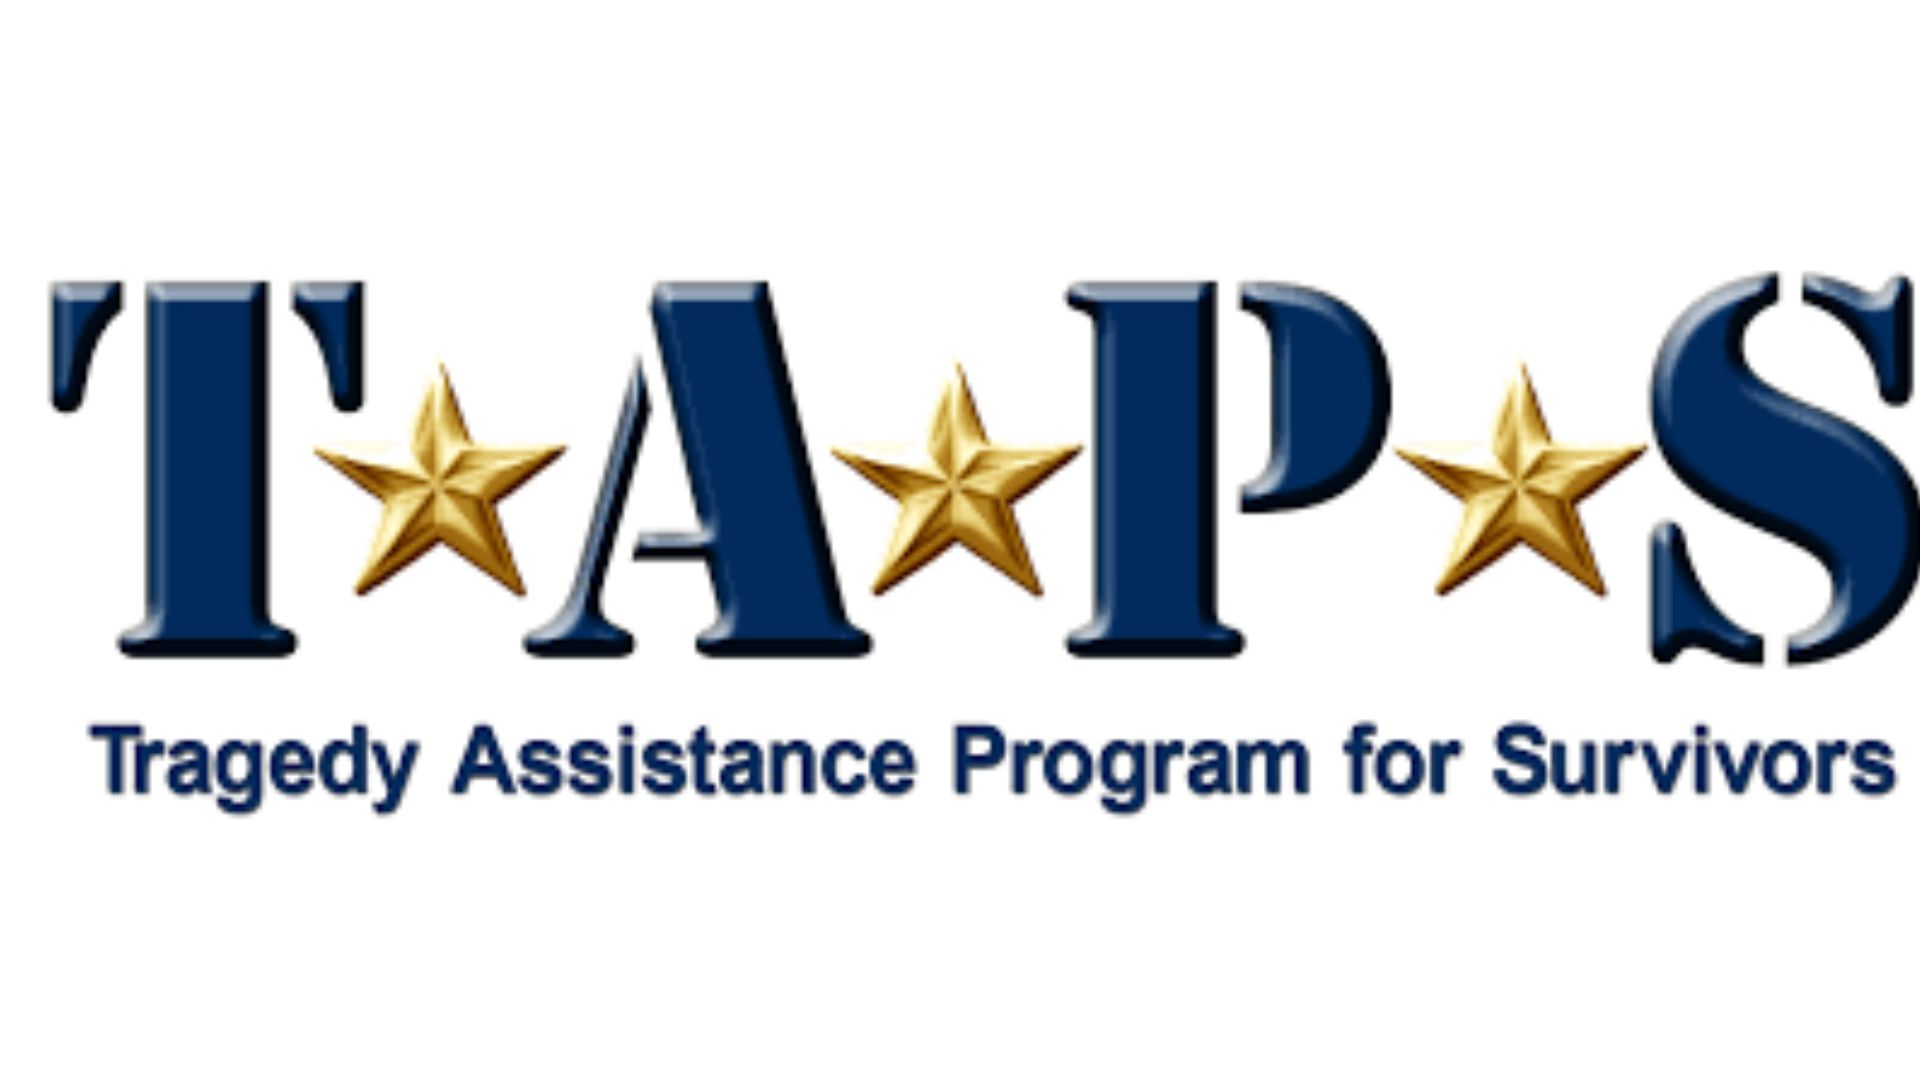 The Tragedy Assistance Program for Survivors (TAPS).